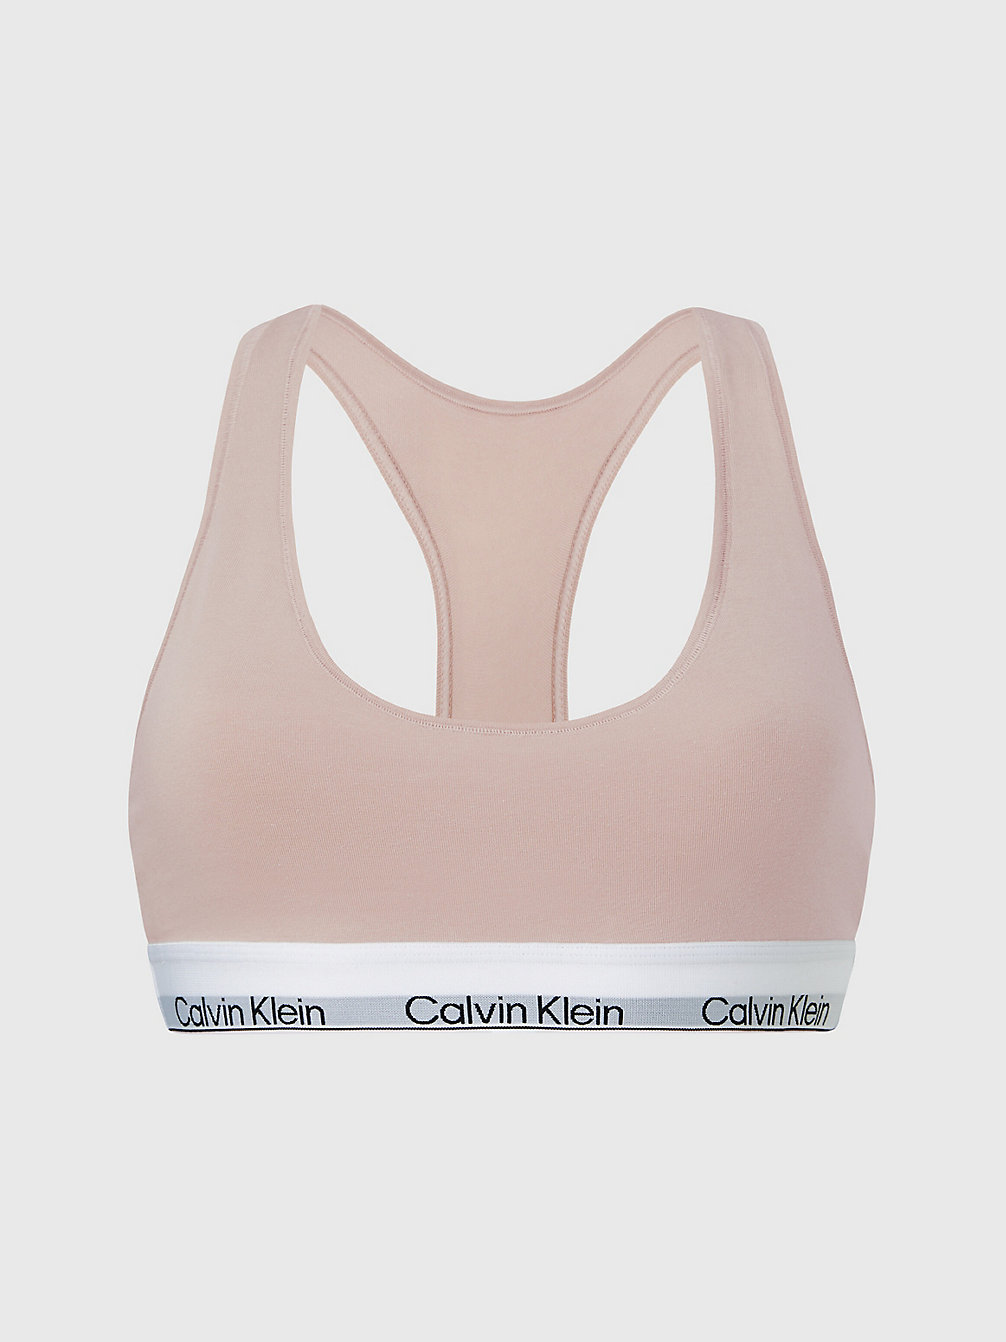 Brassière - Modern Cotton > CEDAR > undefined donna > Calvin Klein